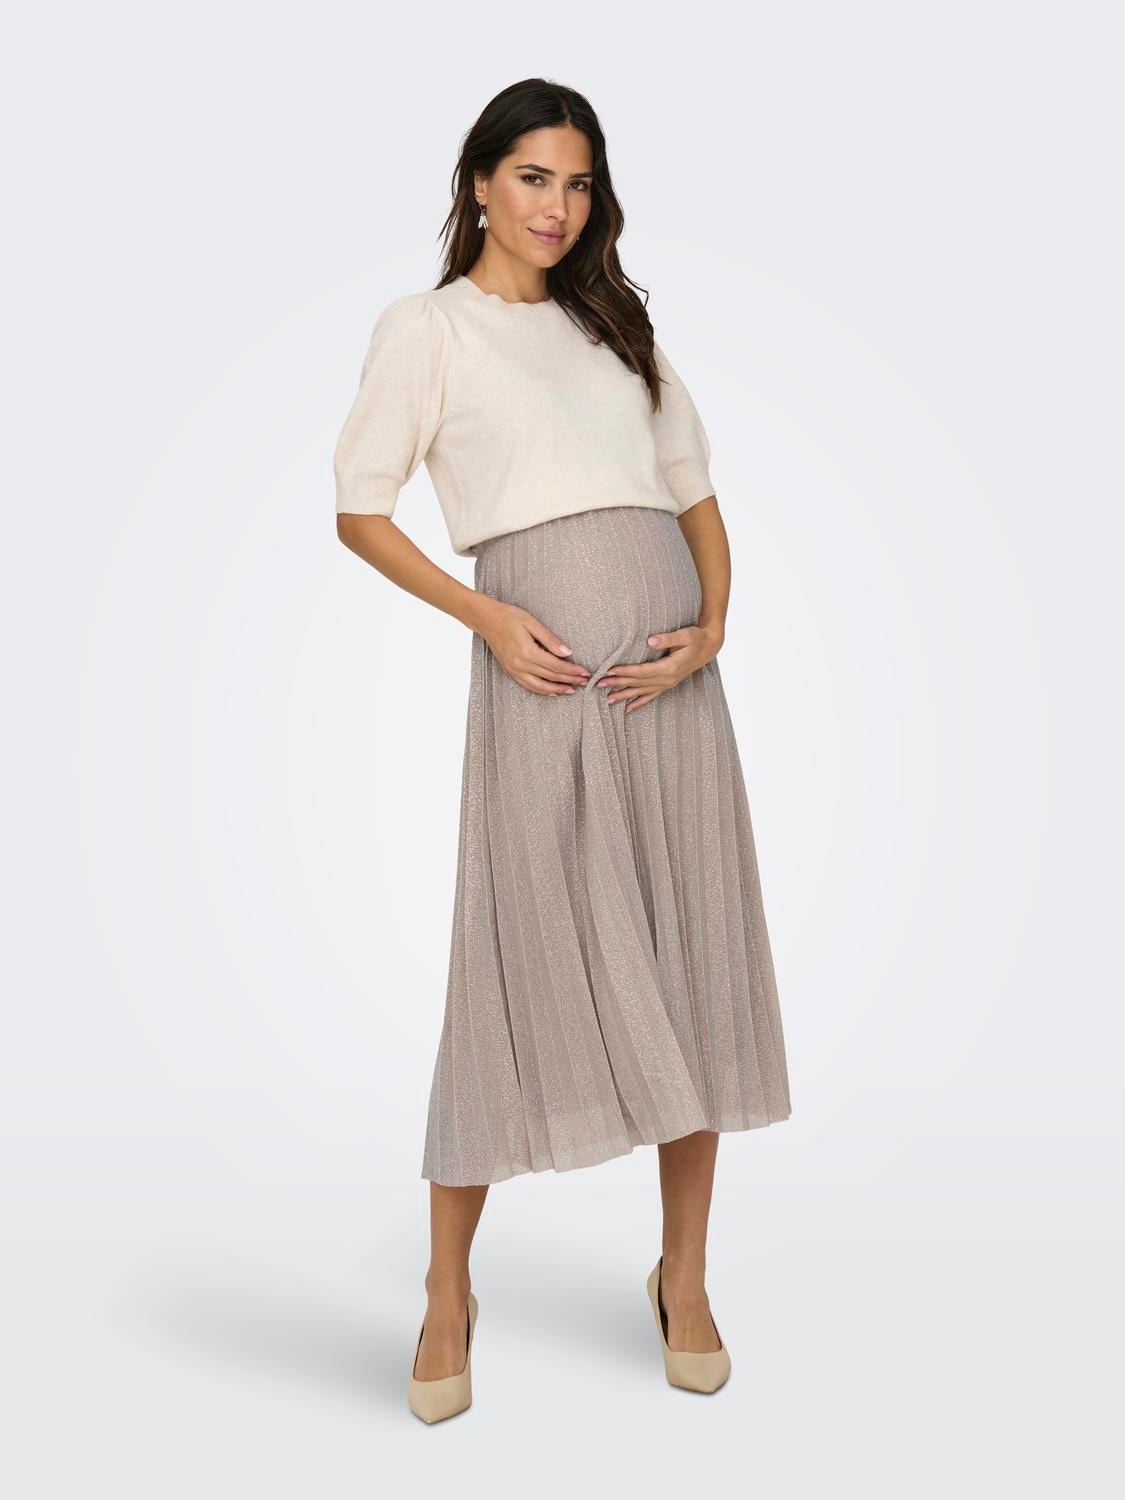 ONLY Maternity Short skirt -Cobblestone - 15288190